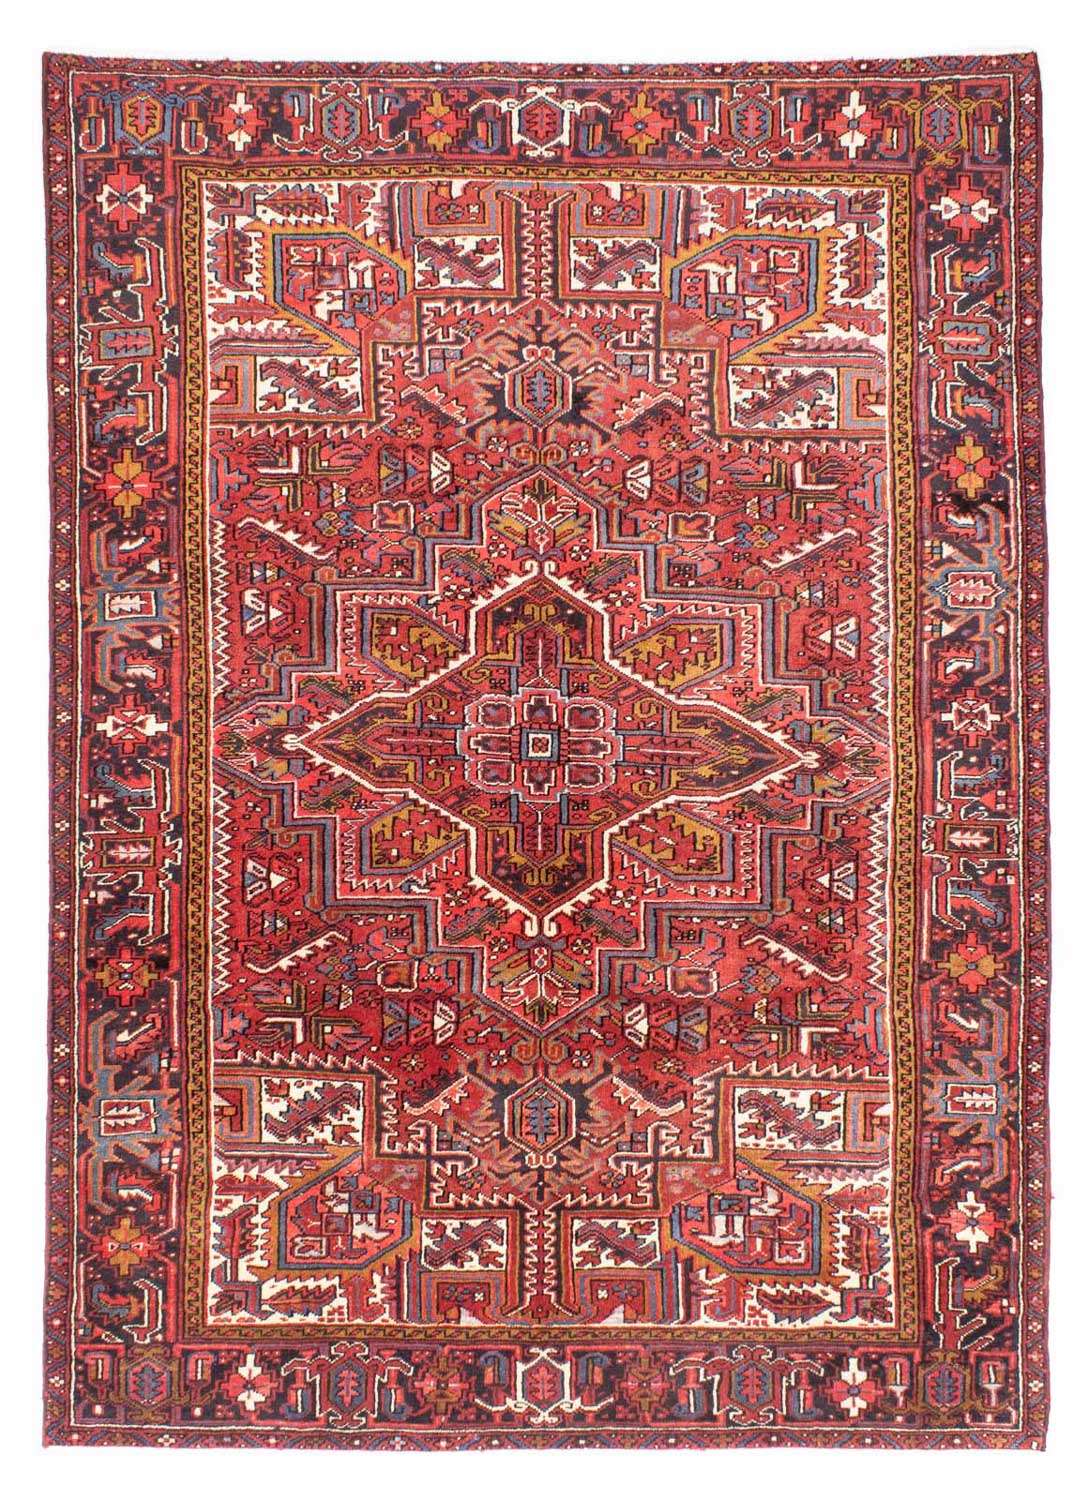 Tapis persan - Nomadic - 304 x 213 cm - rouge